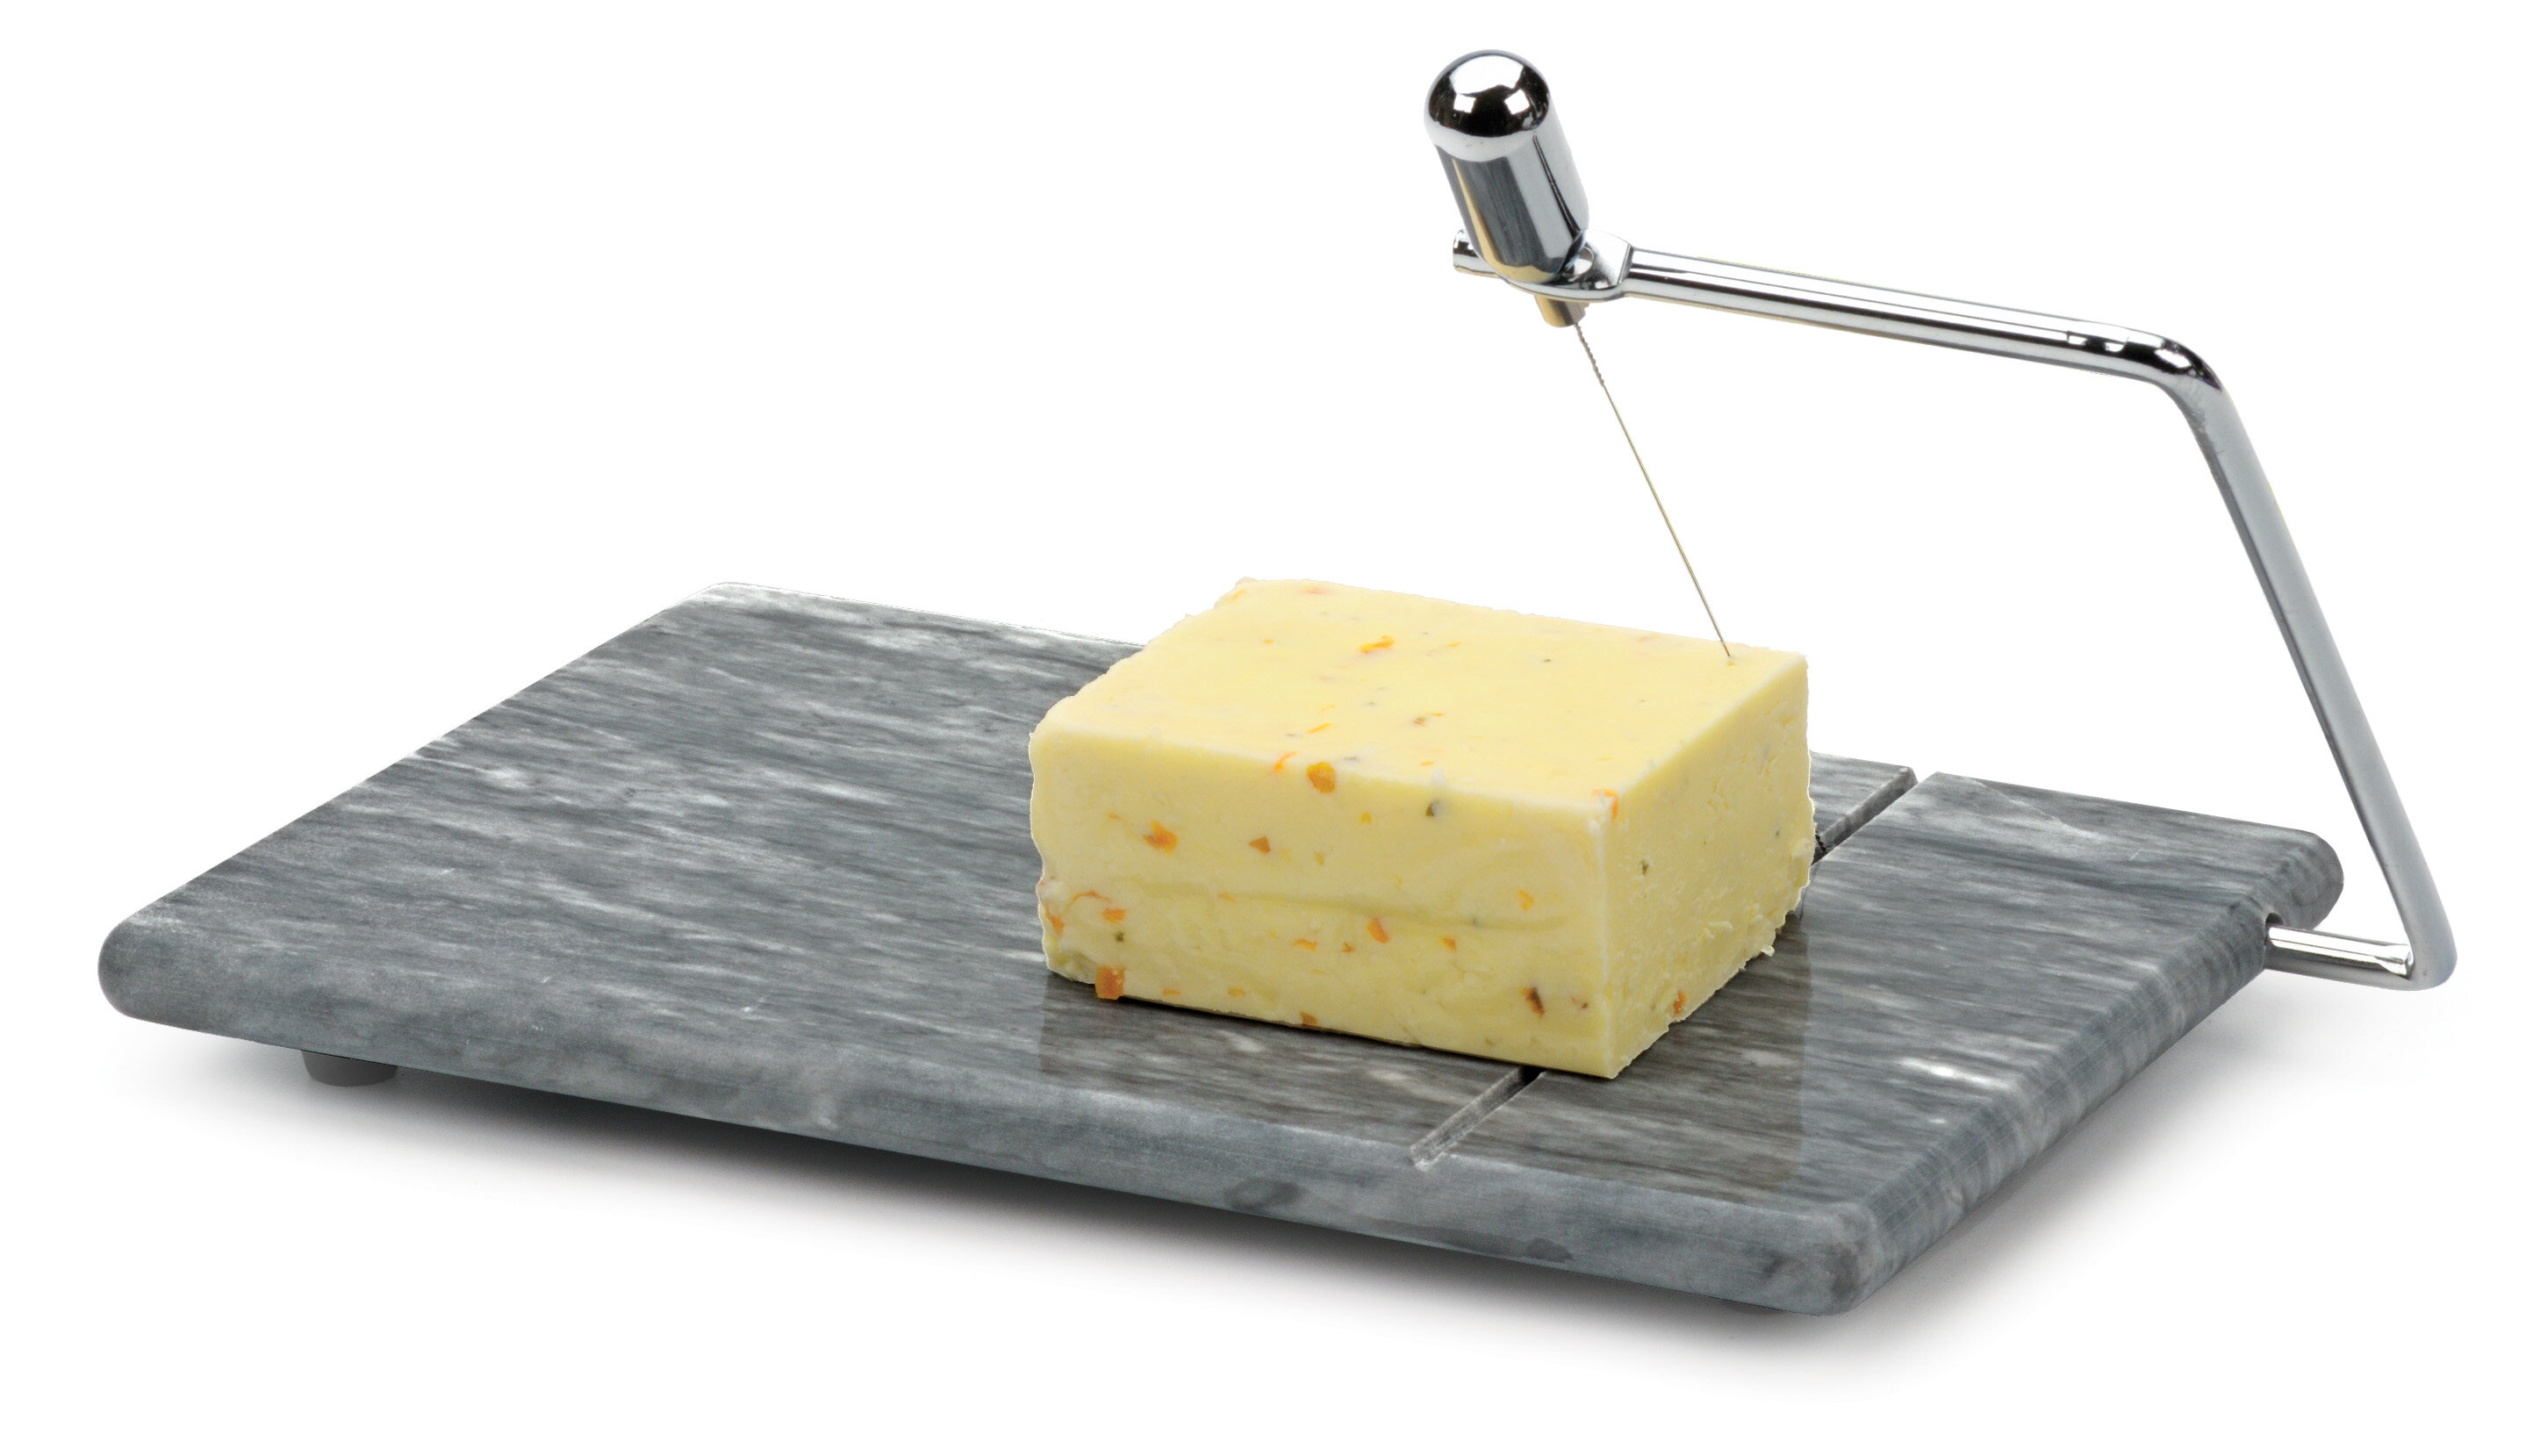 Design Imports RSVP international Butter Slicer